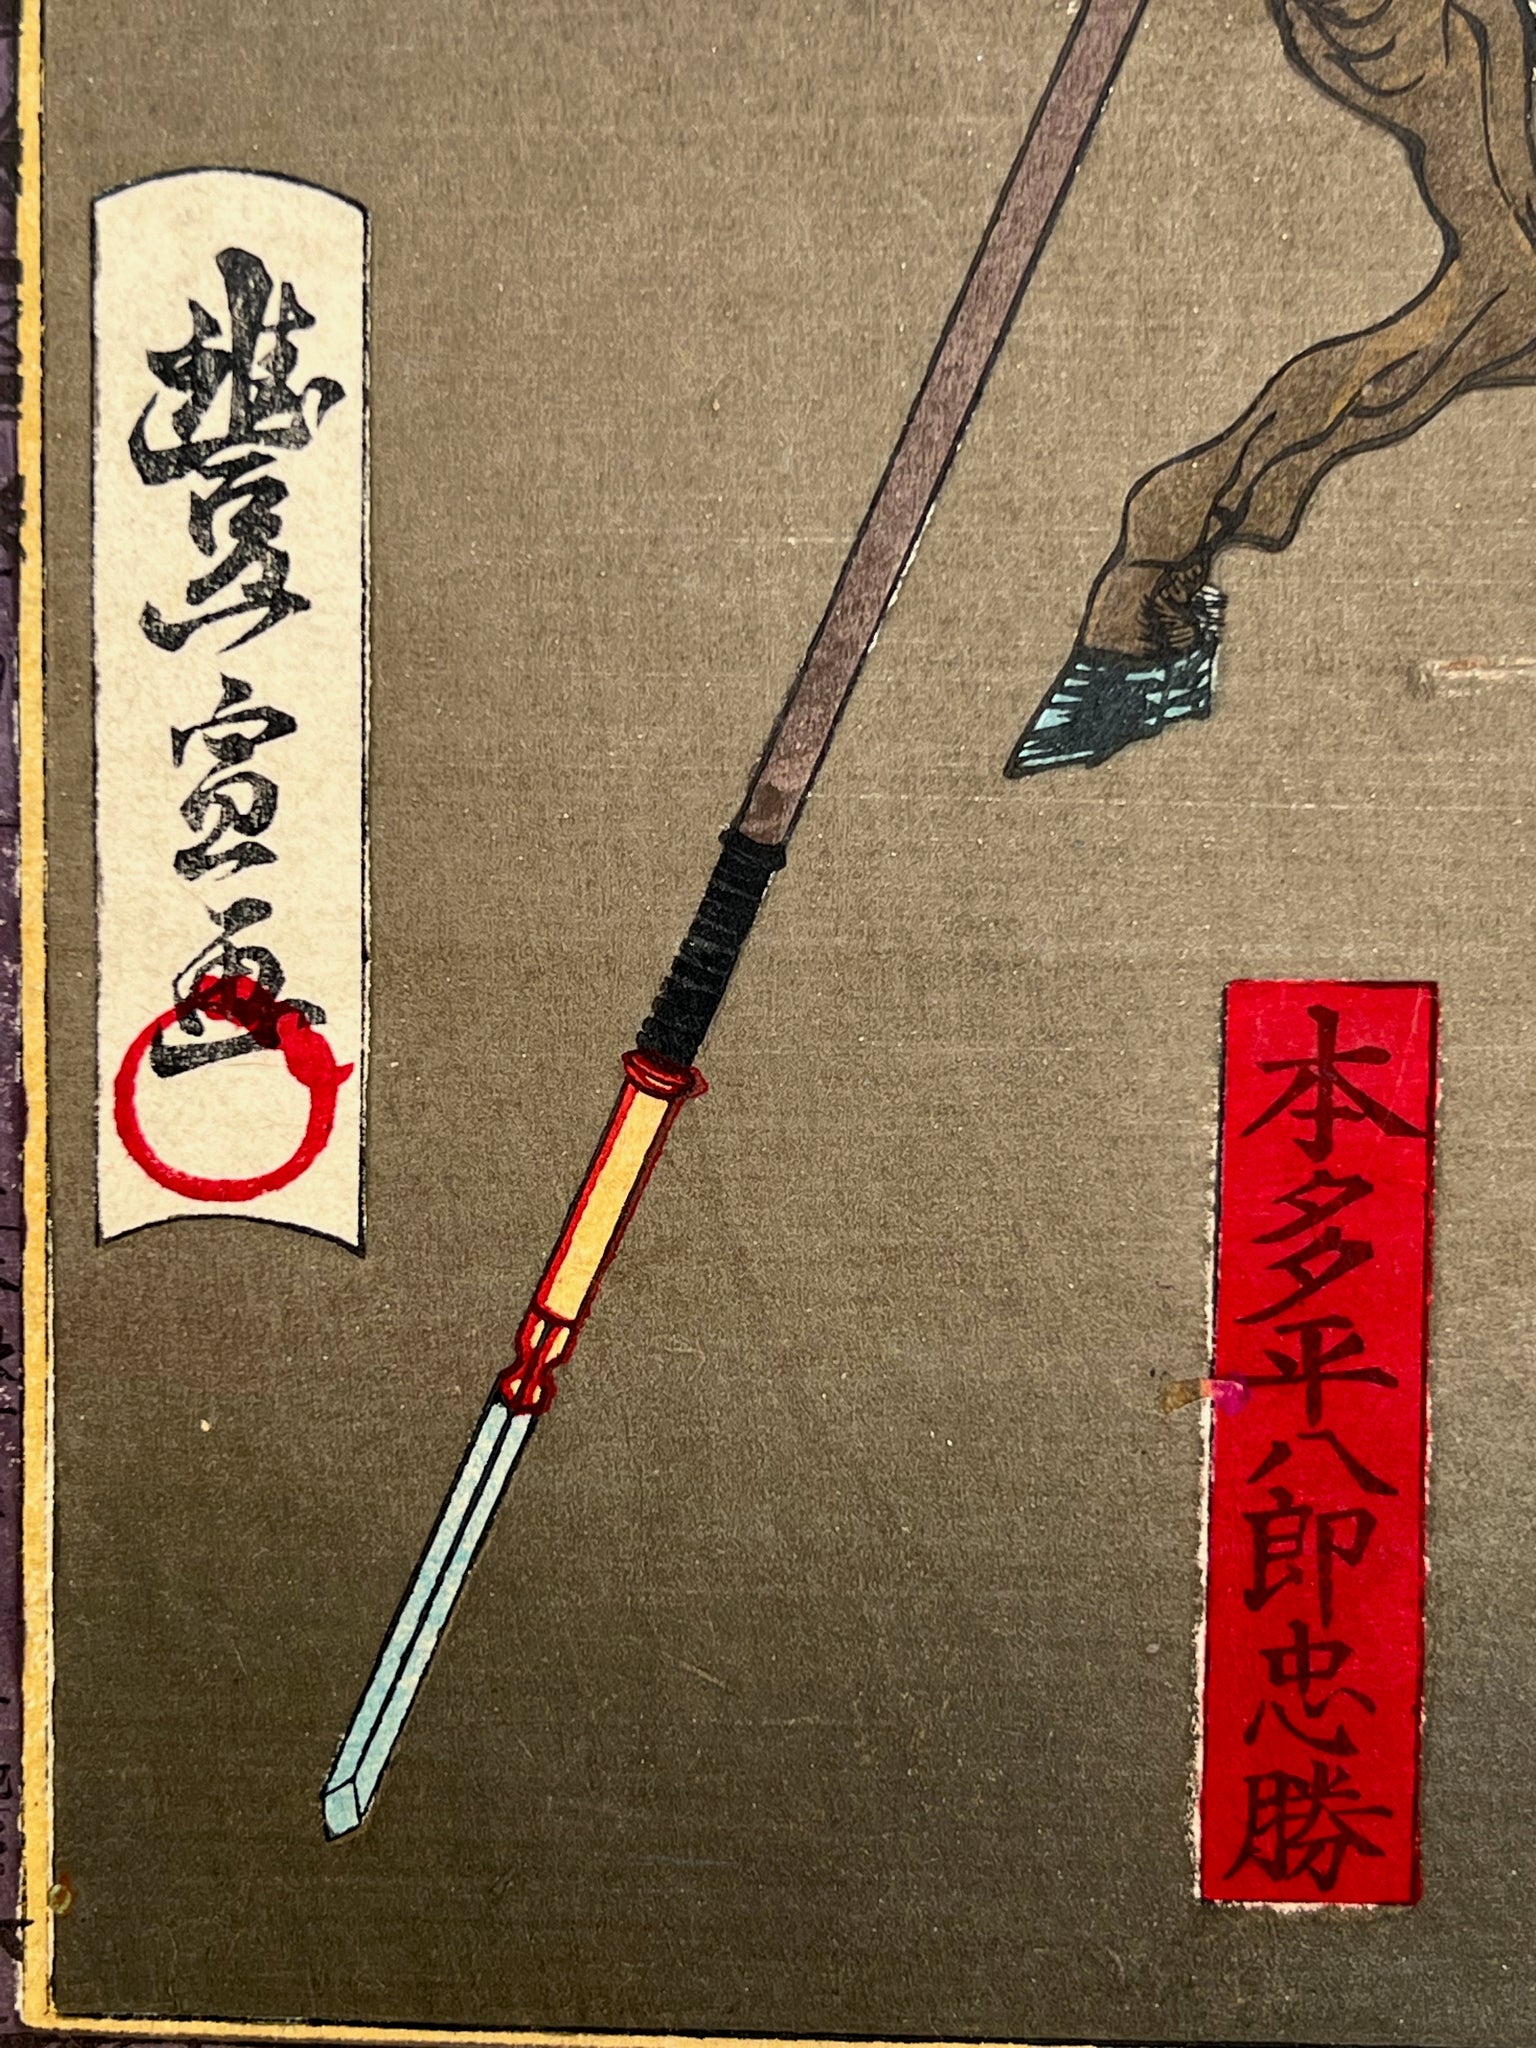 estampe japonaise combat samouraï à cheval, la signature de l'artiste